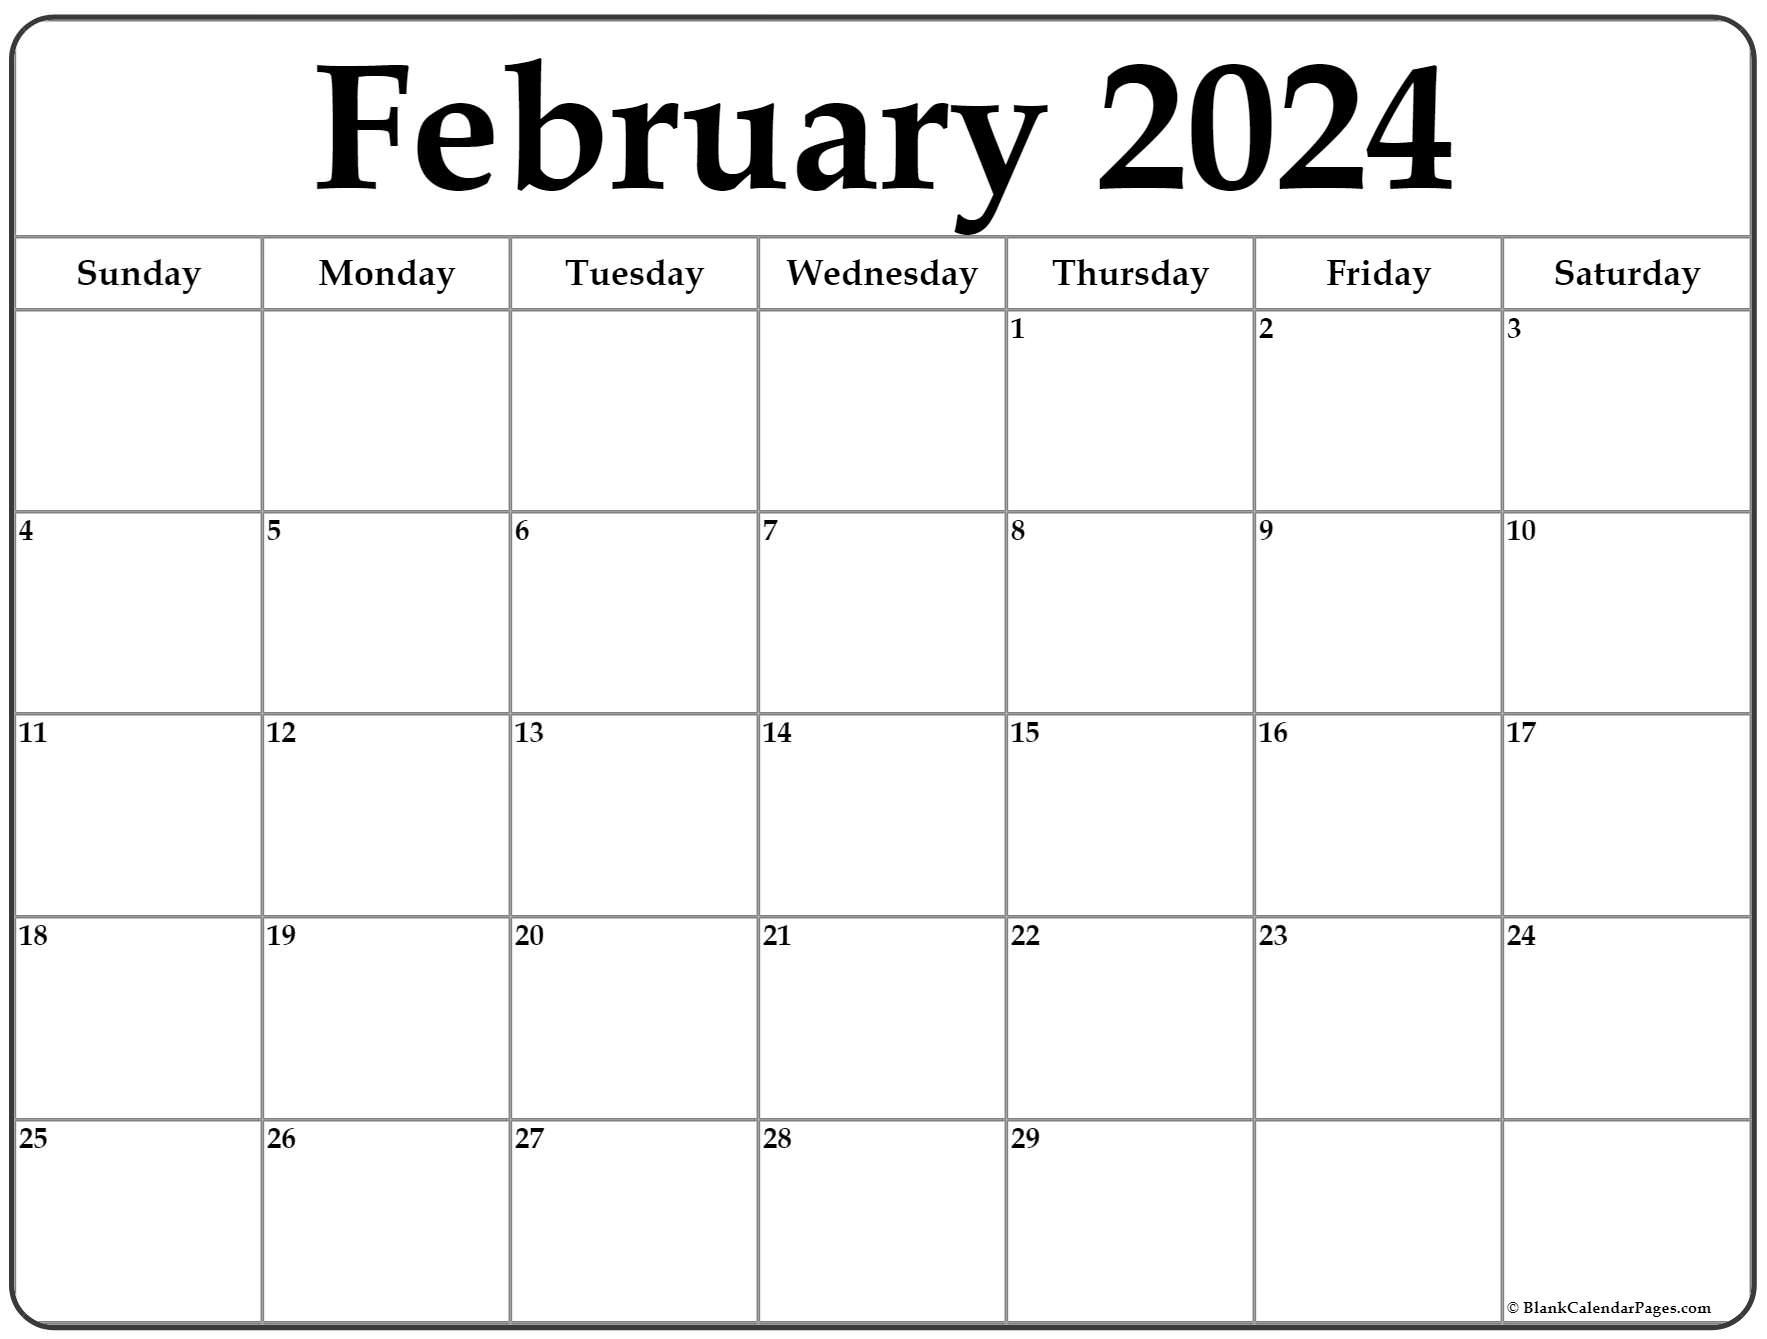 February 2024 Calendar | Free Printable Calendar | Printable Calendar 2024 February Month